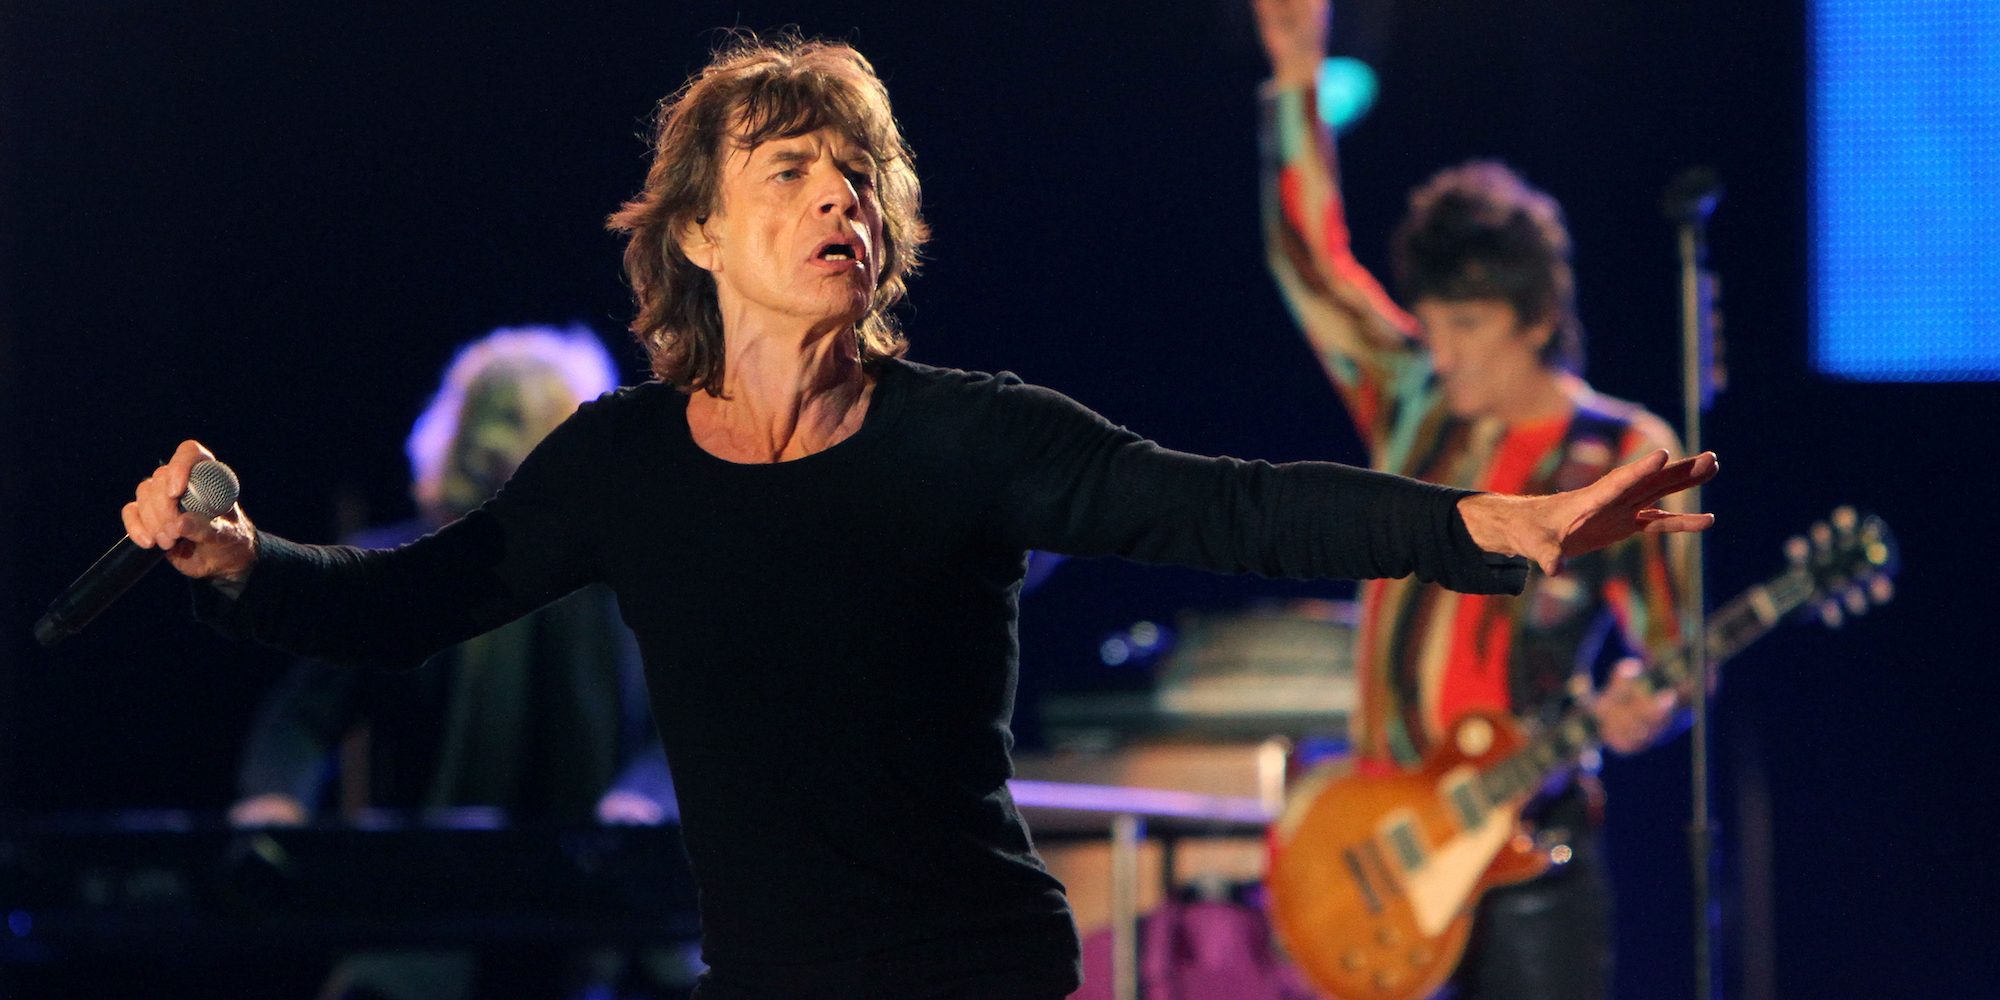 DE VUELTA AL RUEDO: Tras la operación de Mick Jagger, los Stones regresan por más